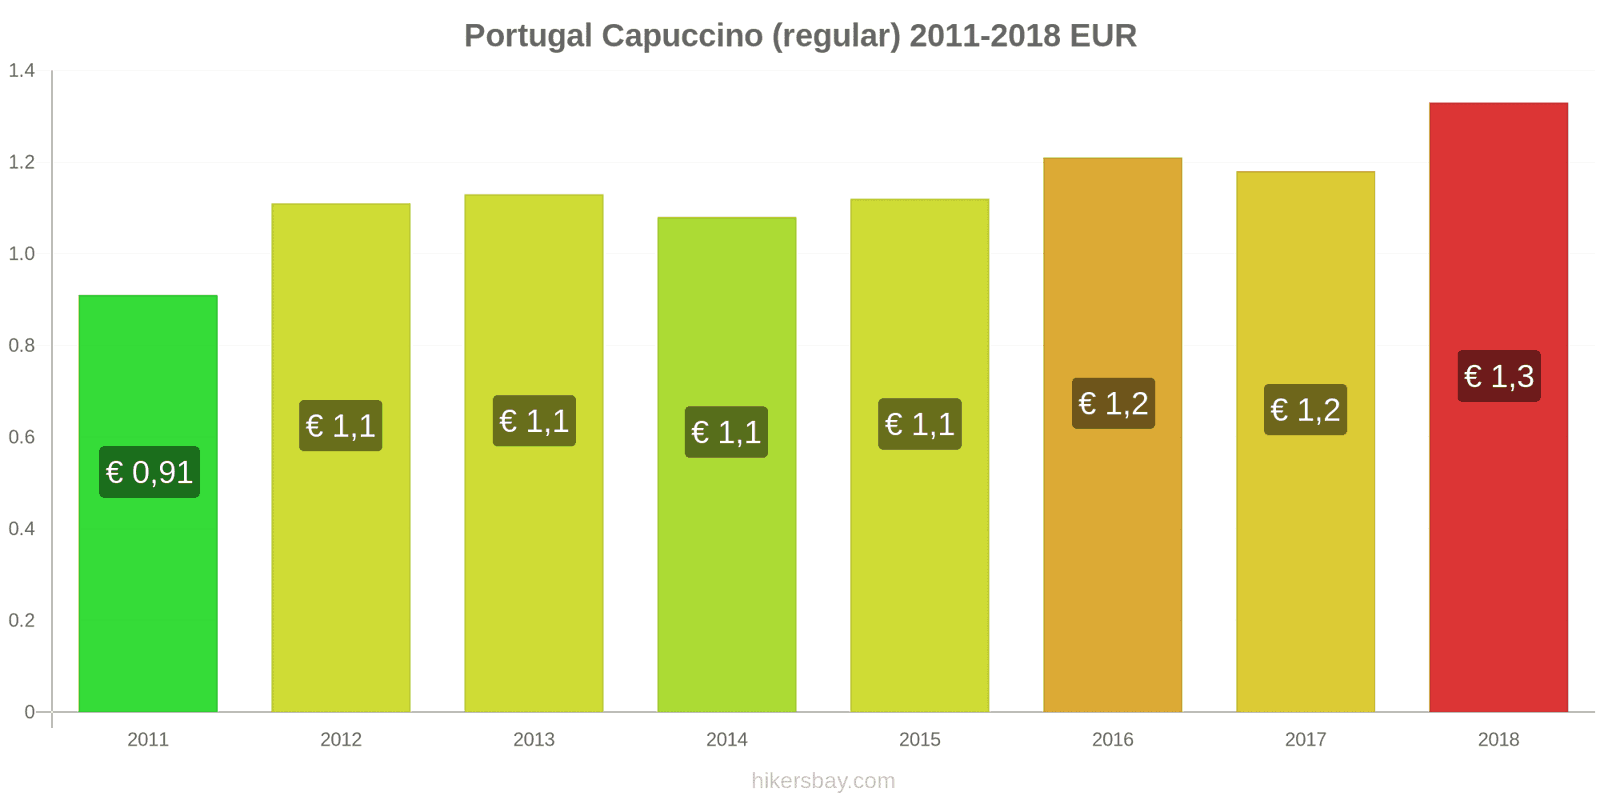 Portugal mudanças de preços Cappuccino hikersbay.com